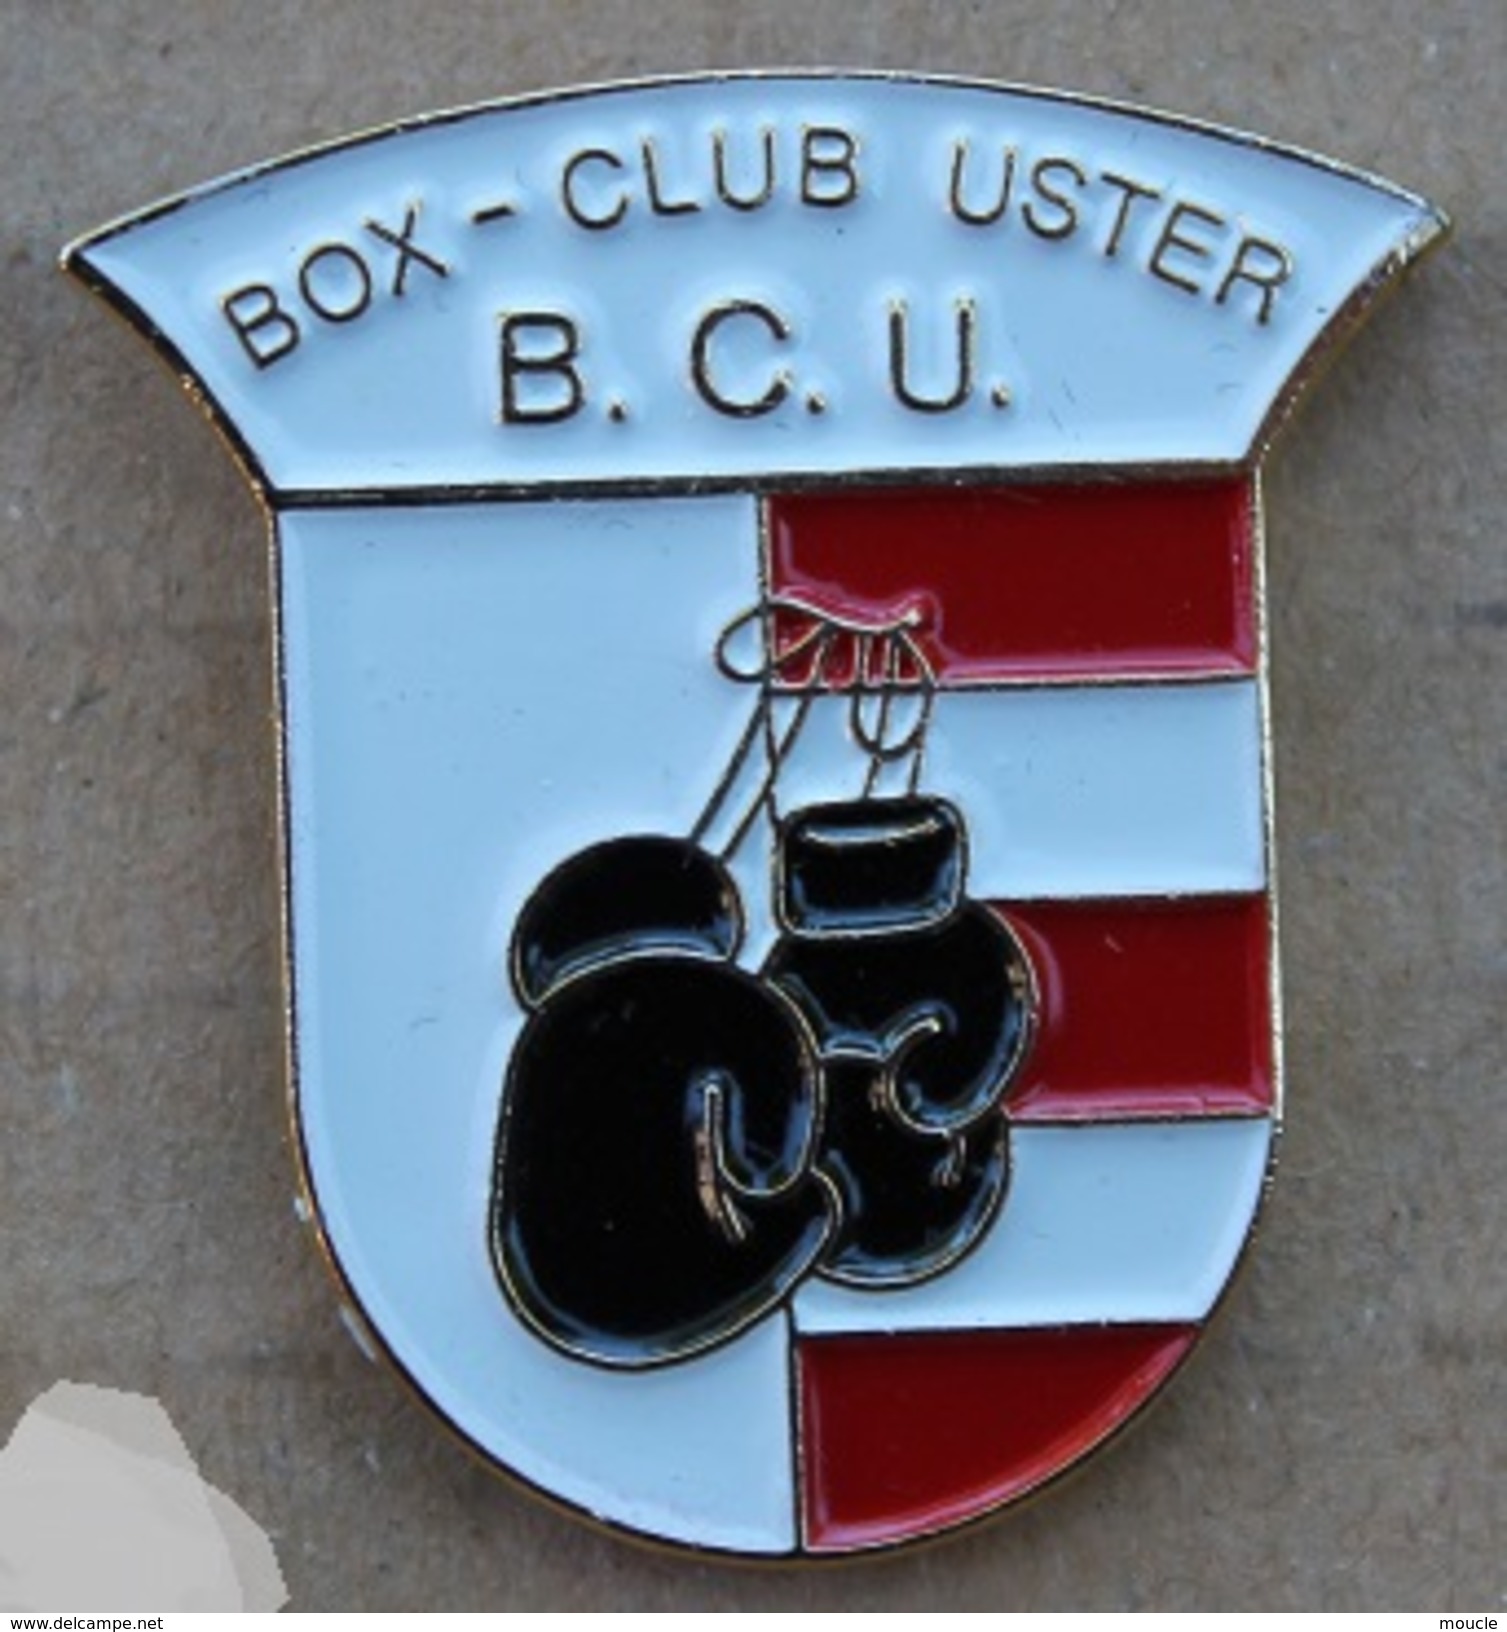 BOX CLUB USTER SCHWEIZ - B.C.U. - BOXE CLUB - SUISSE - GANTS  - (JAUNE) - Boksen